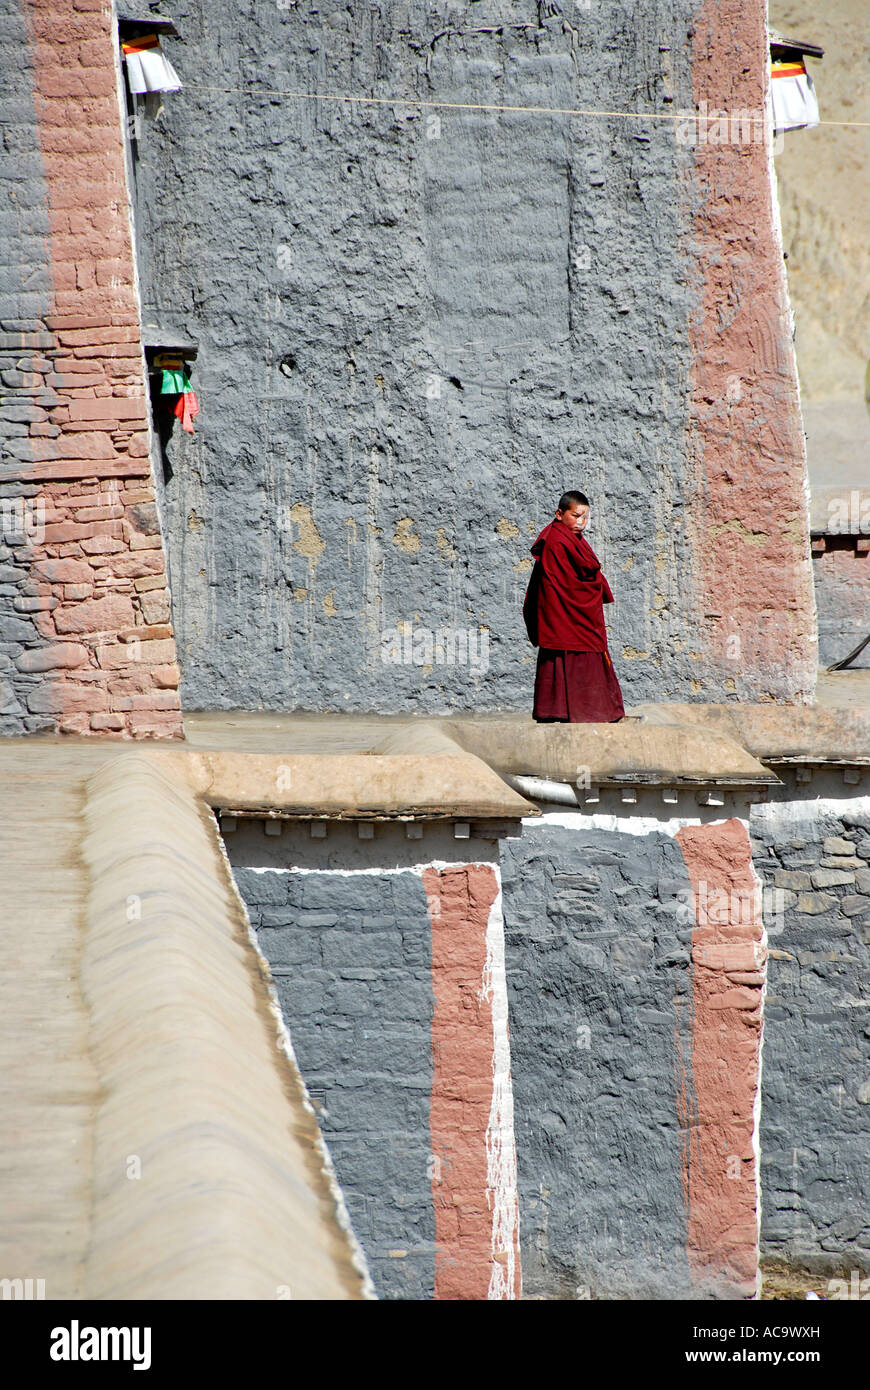 Le bouddhisme tibétain débutant sur un mur du monastère de Sakya Tibet Chine Banque D'Images